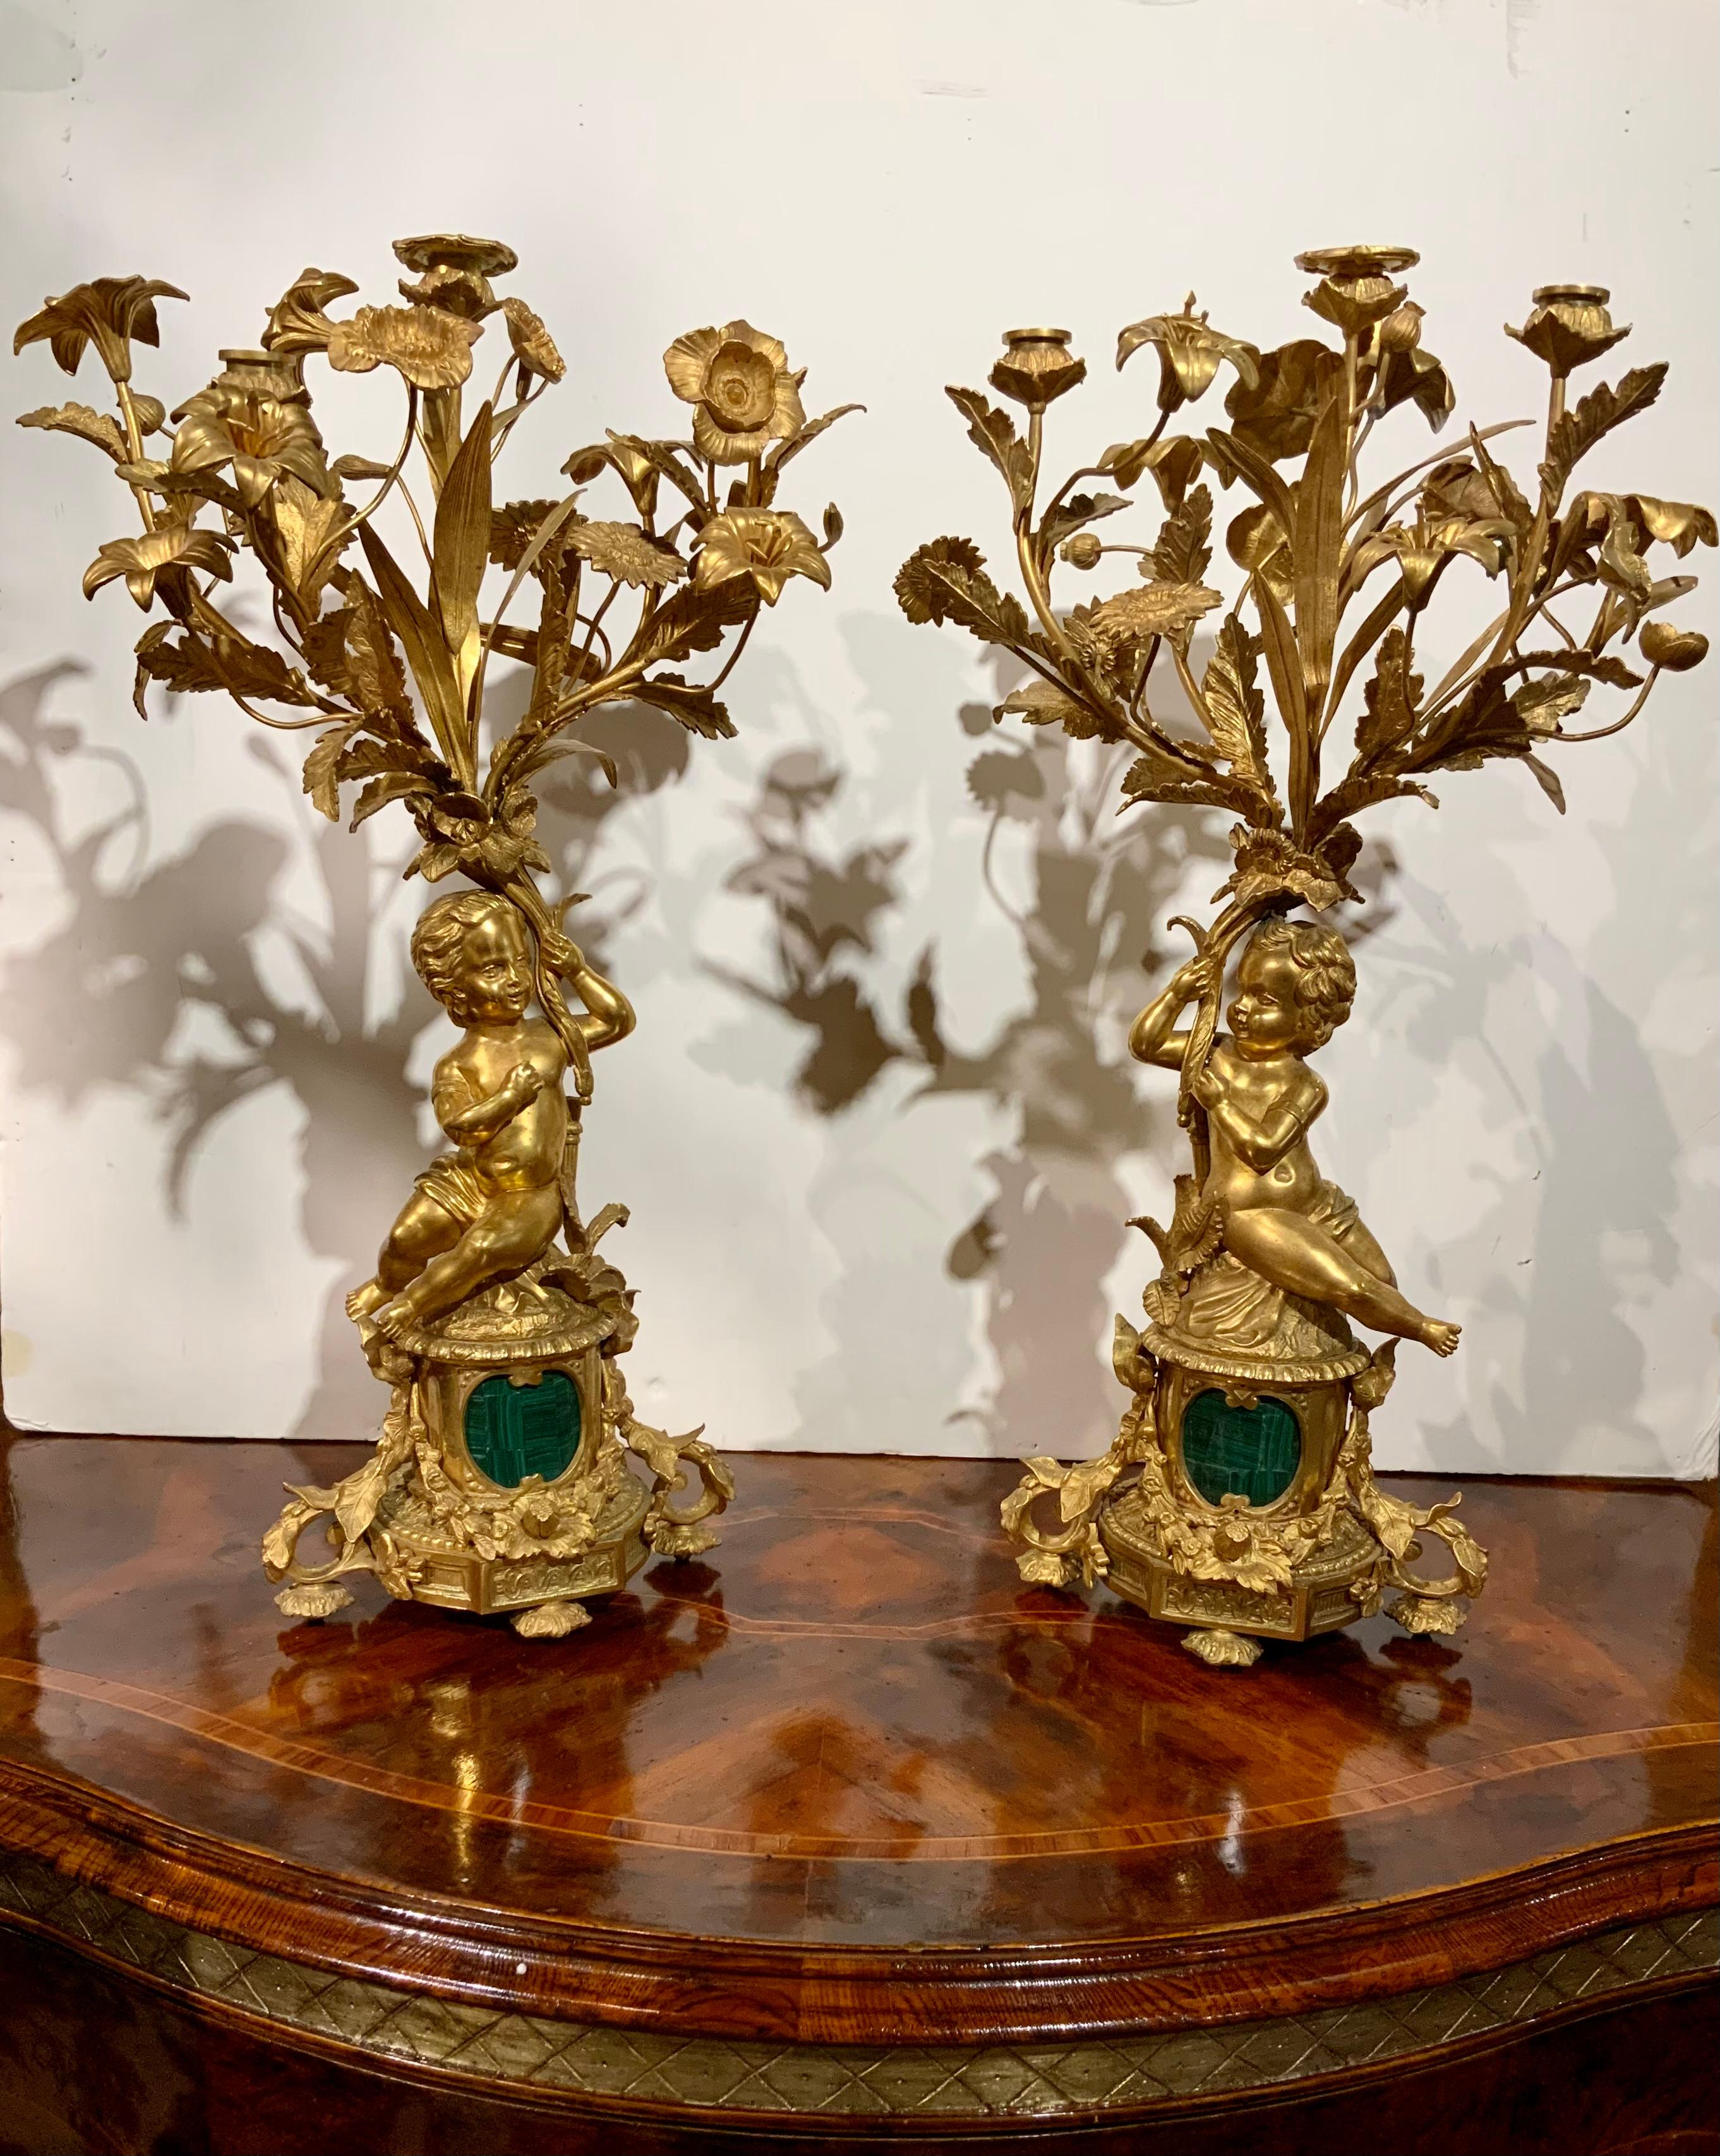 Cette paire de chandeliers en bronze doré est en très bon état.
Patine d'origine dorée et brillante. Chaque candélabre est doté d'un
Putti tenant trois branches tenant trois chandeliers.
Chaque candélabre possède une multitude de branches sinueuses